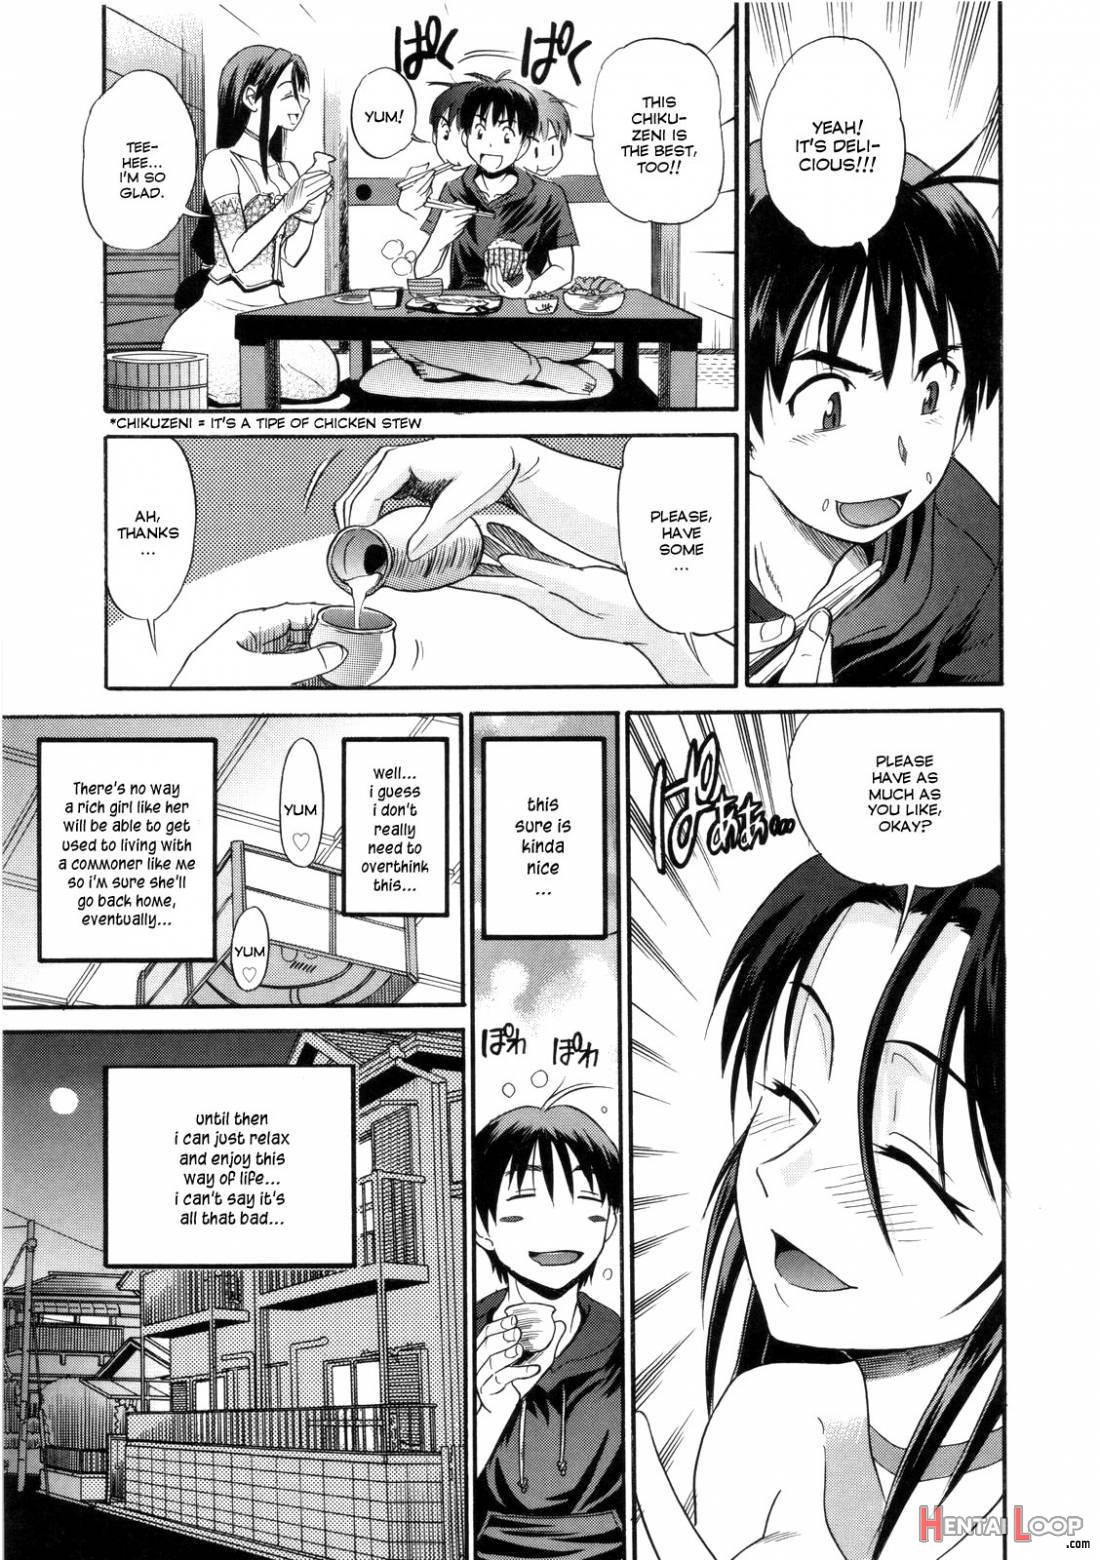 B-Chiku page 11